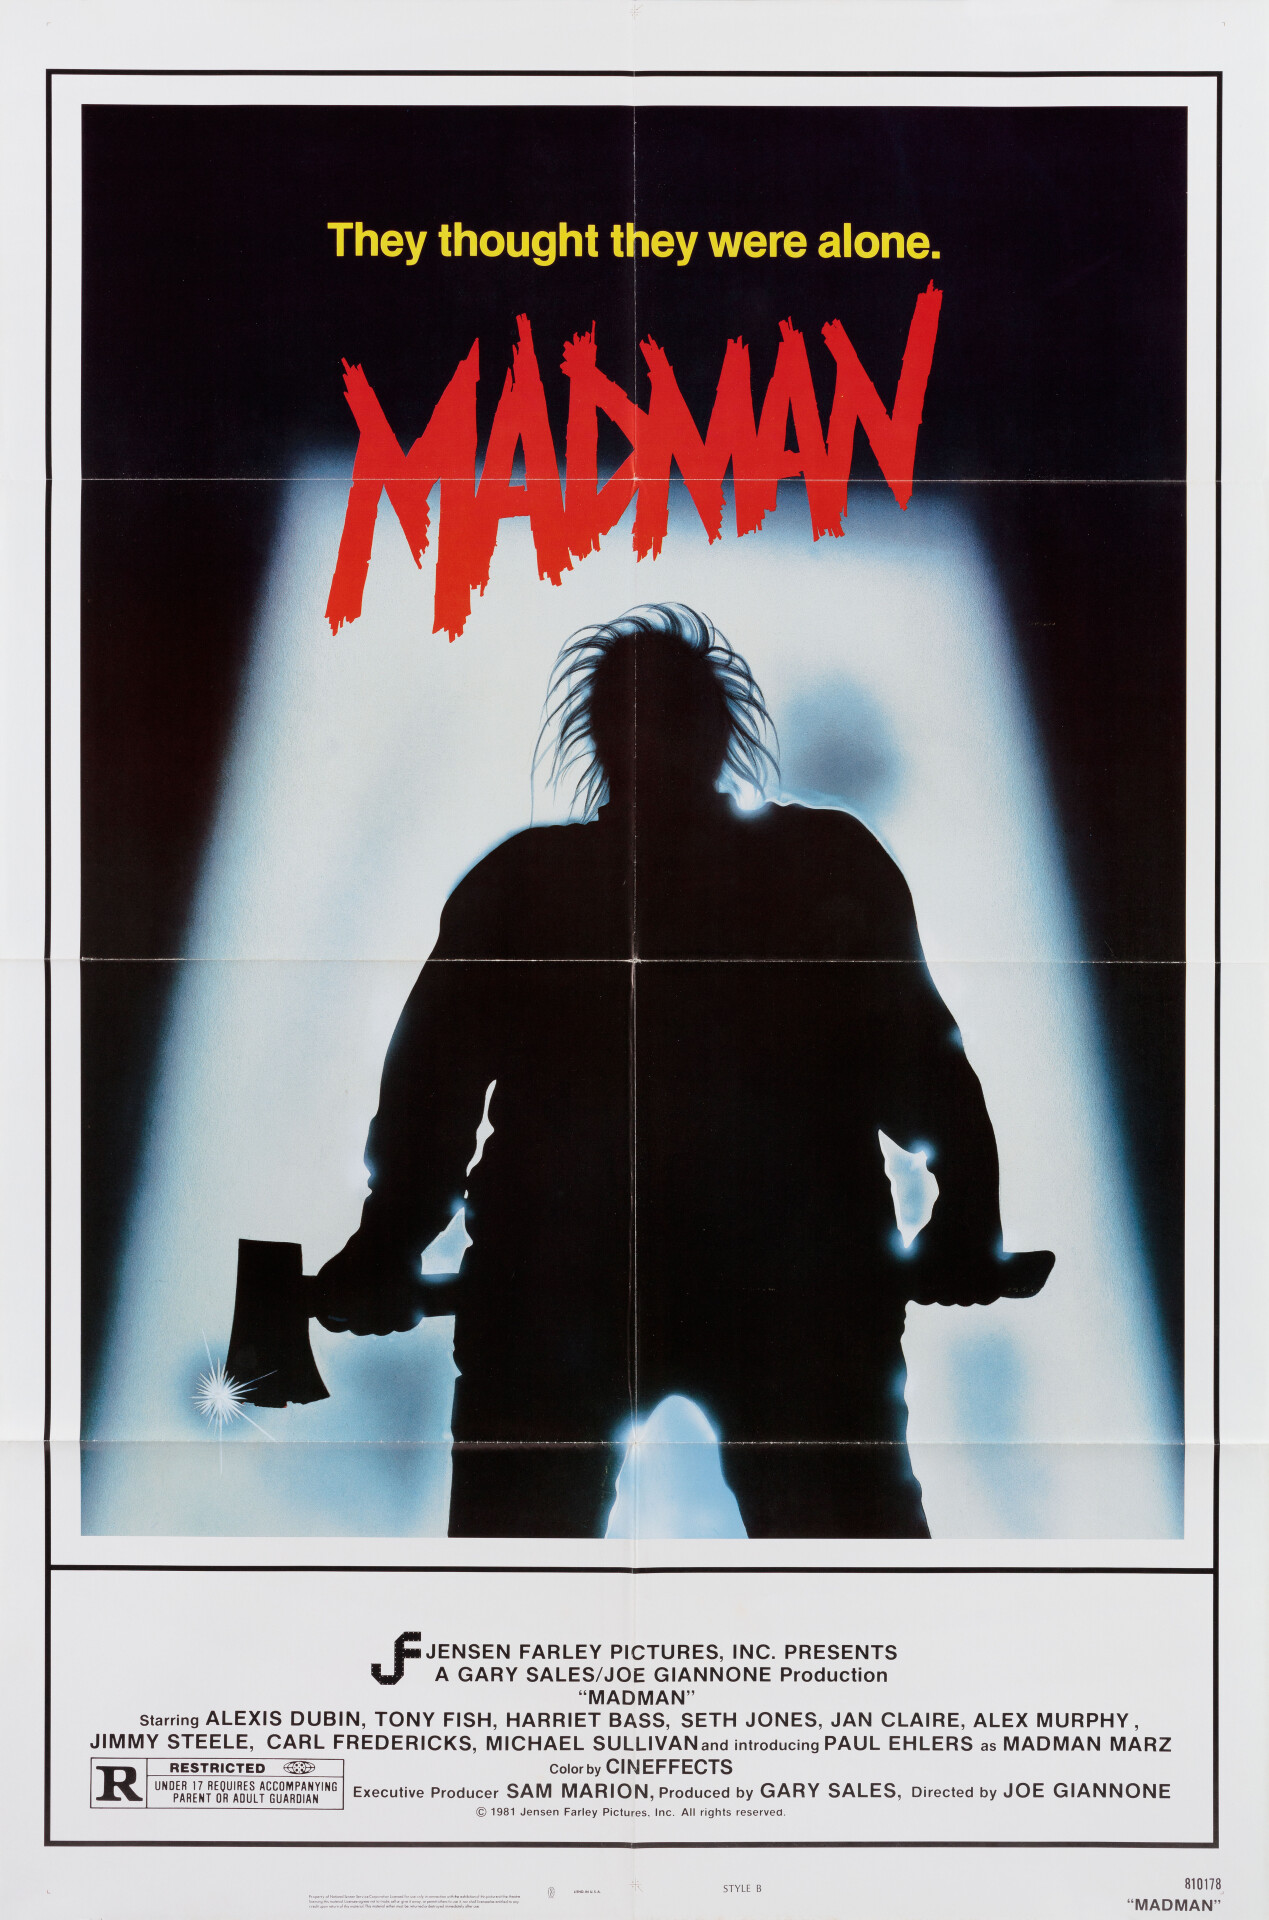 Безумец (Madman, 1982), режиссёр Джо Джианноне, американский постер к фильму (ужасы, 1982 год)